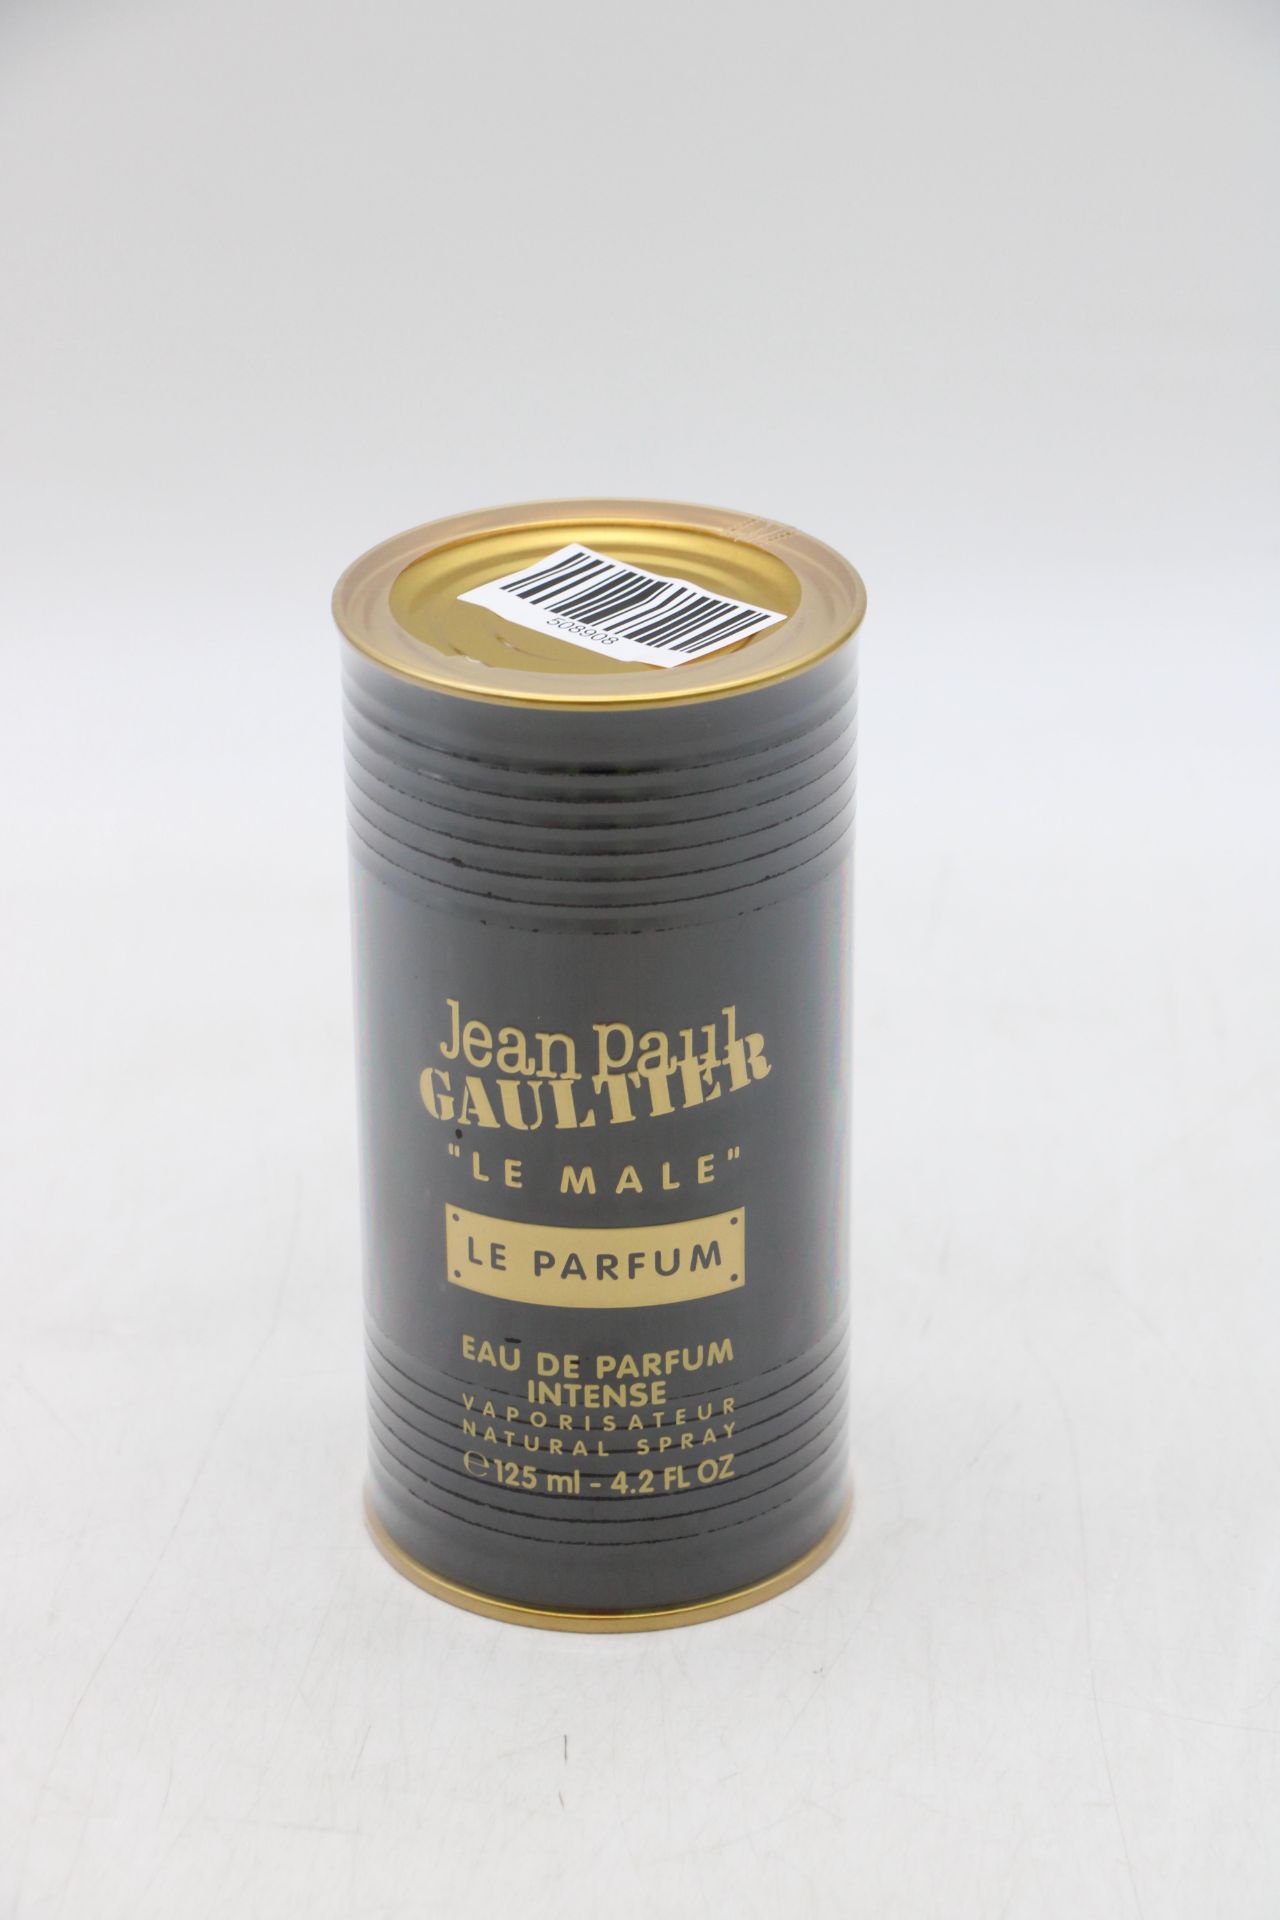 Jean Paul Gaultier Le Male Eau de Parfum, 125ml - Image 2 of 2